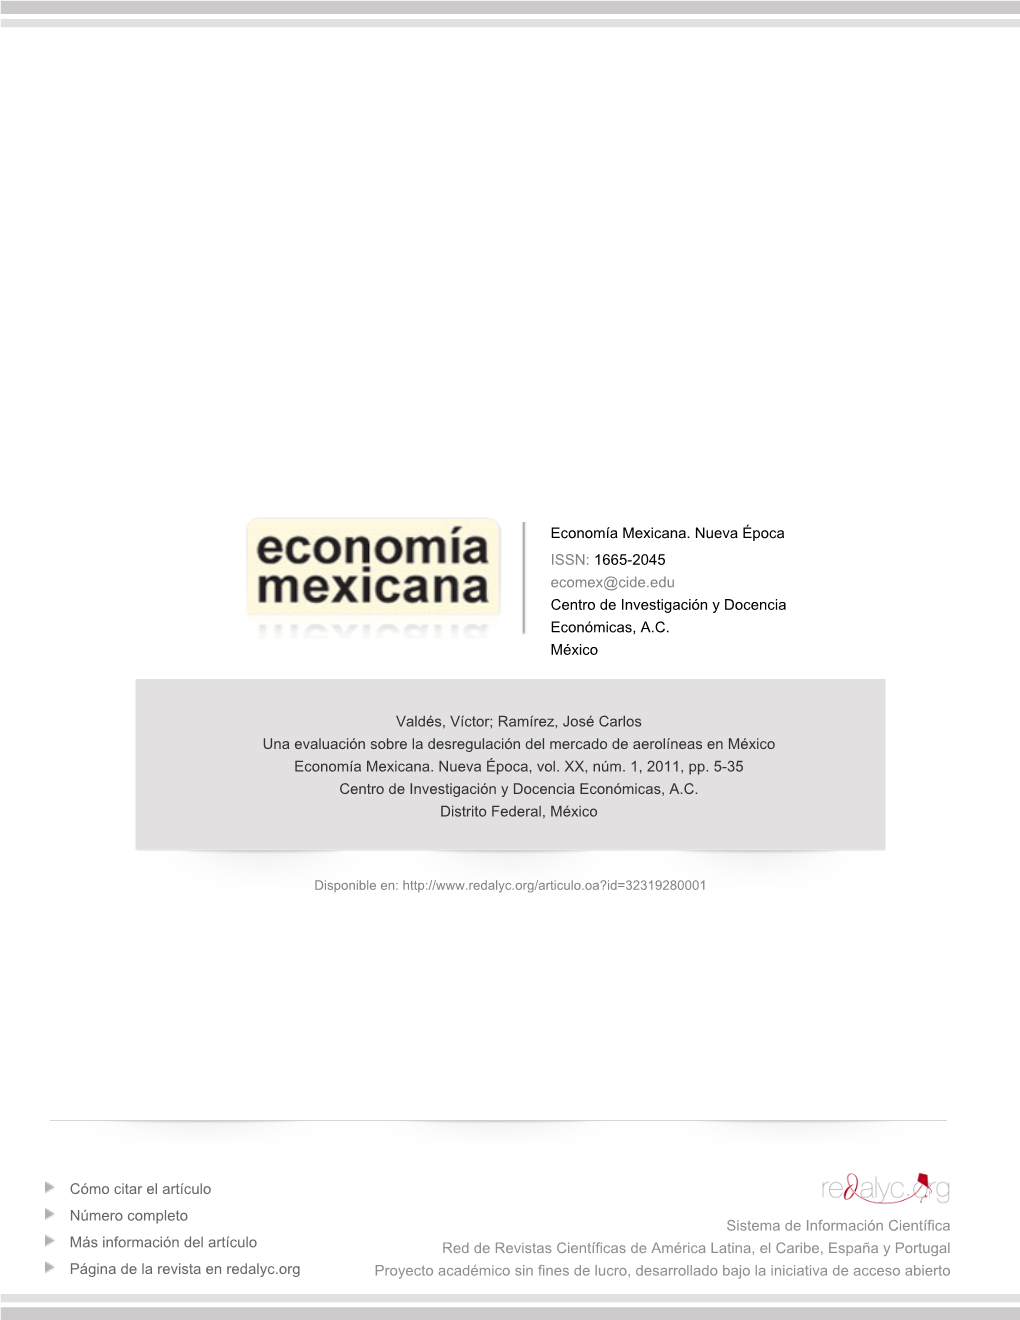 Una Evaluación Sobre La Desregulación Del Mercado De Aerolíneas En México Economía Mexicana